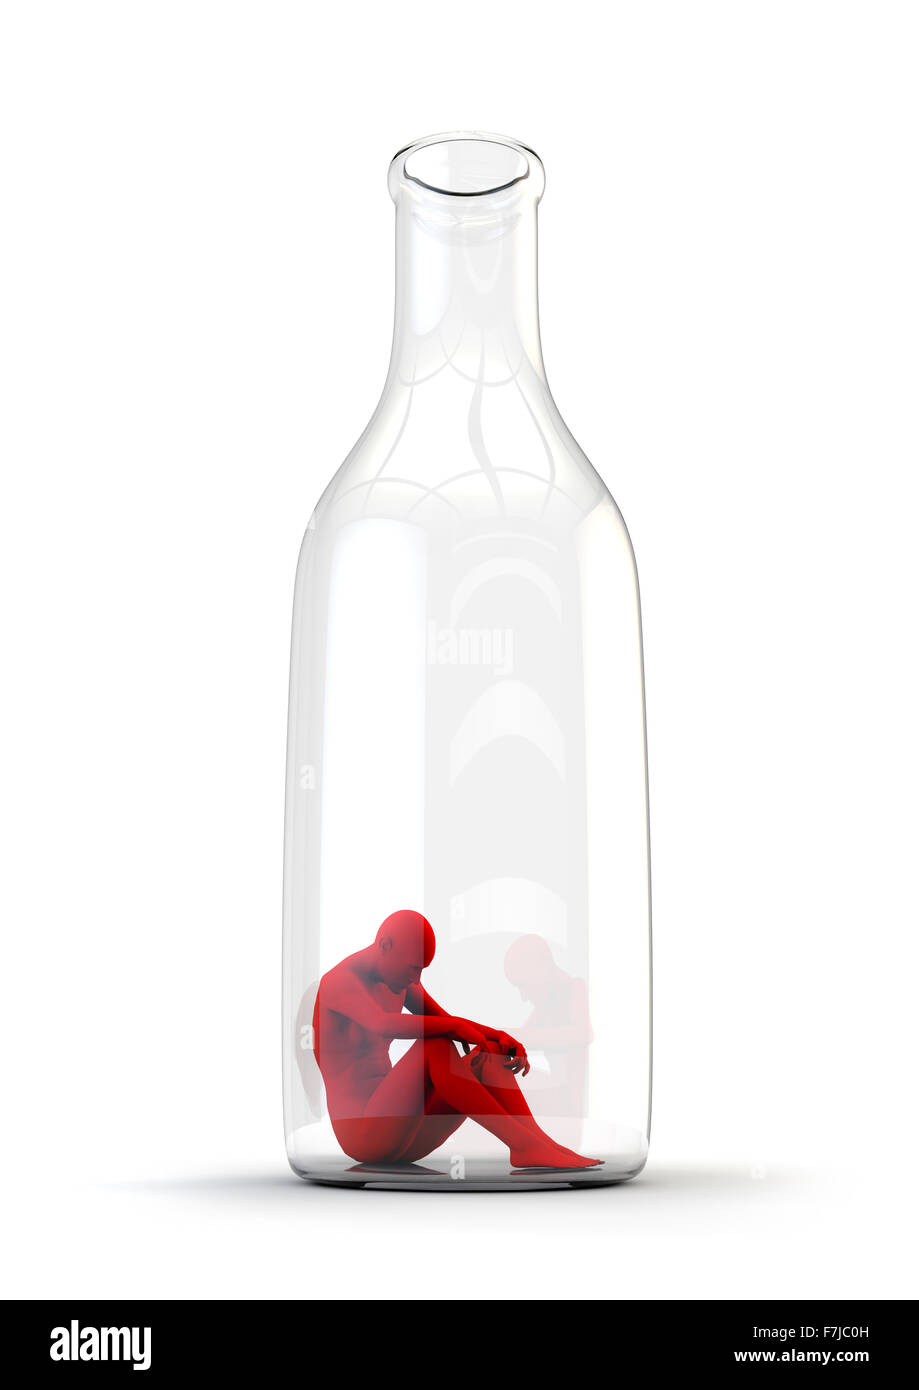 Leben in der Flasche / Alkoholismus Konzept mit traurigen männliche Figur sitzt am unteren Rand einer Flasche Stockfoto